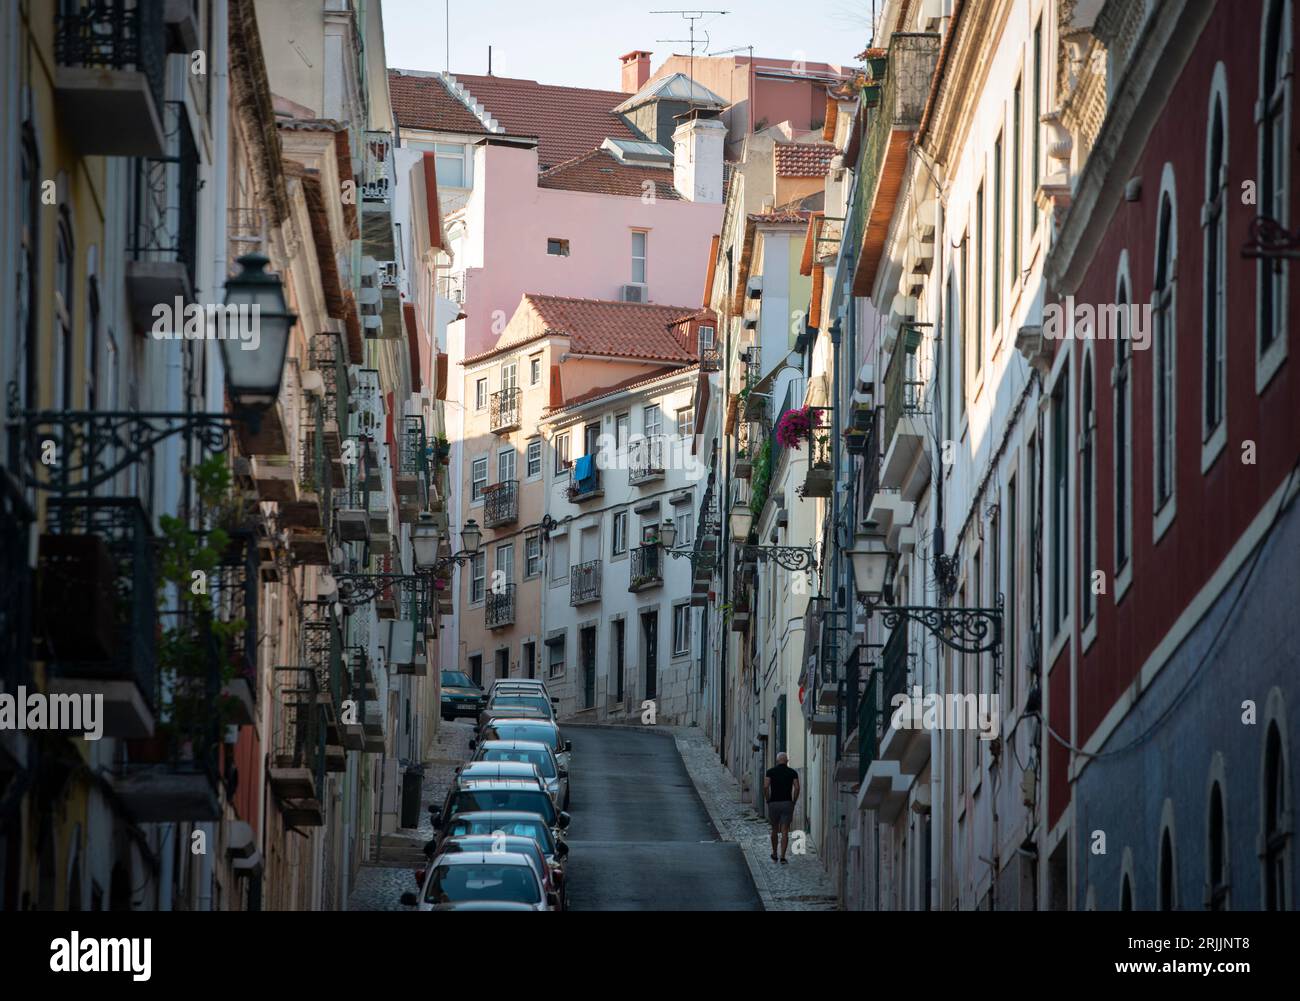 Domenica sera in Rue Manual Bernardes nel quartiere Principe Real di Lisbona, Portogallo. Un uomo solitario che cammina in salita su una delle strette strade della capitale portoghese. Foto Stock